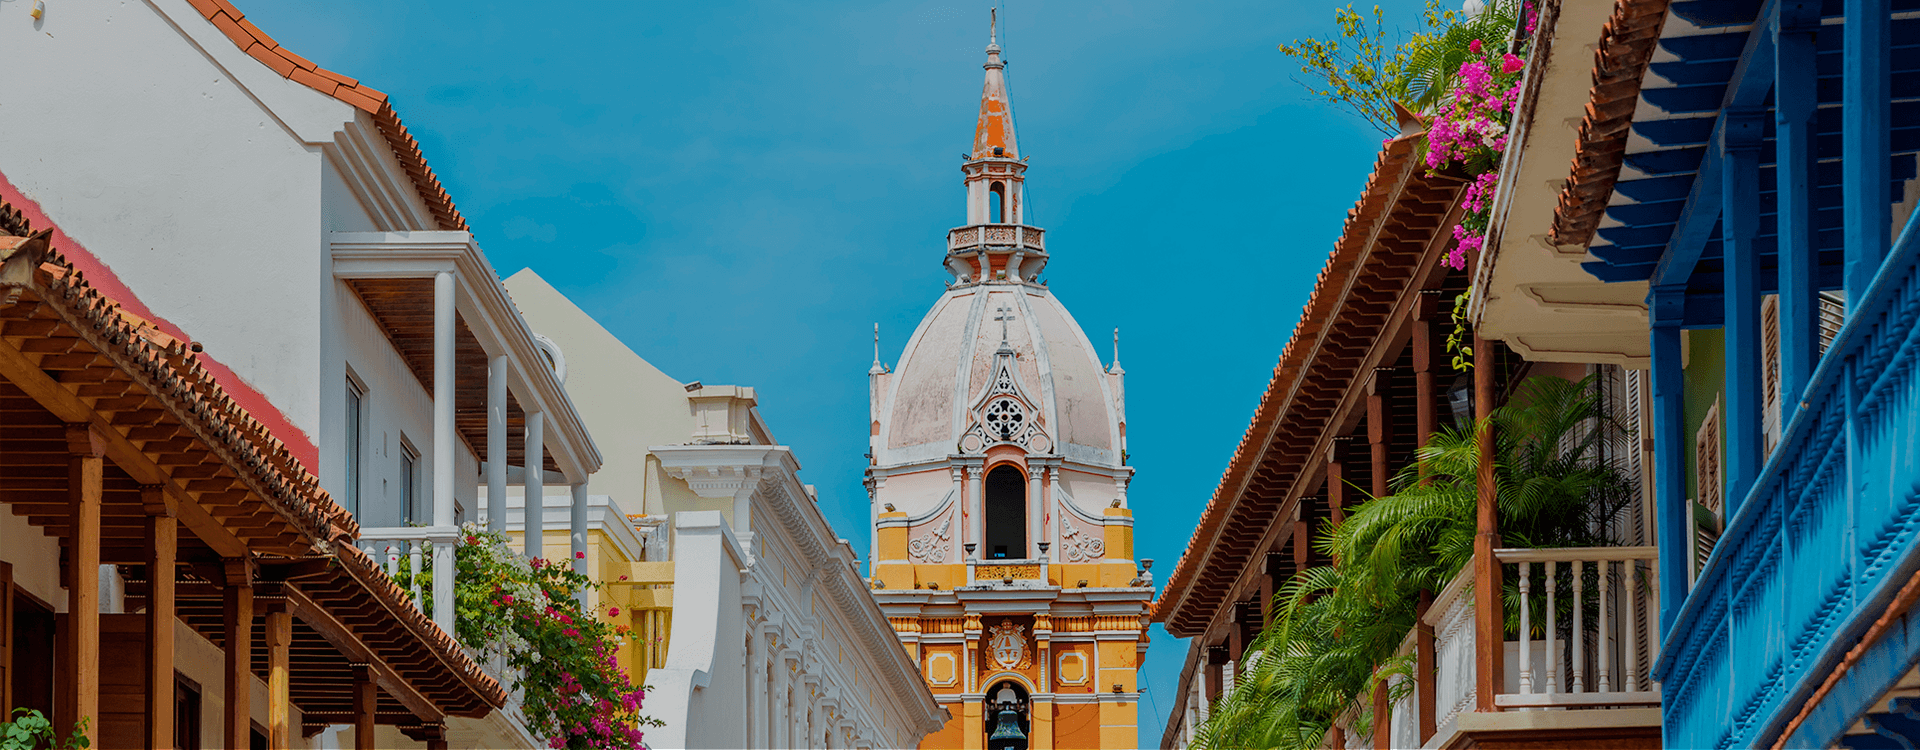 Cartagena de Indias. Photo : Procolombia.